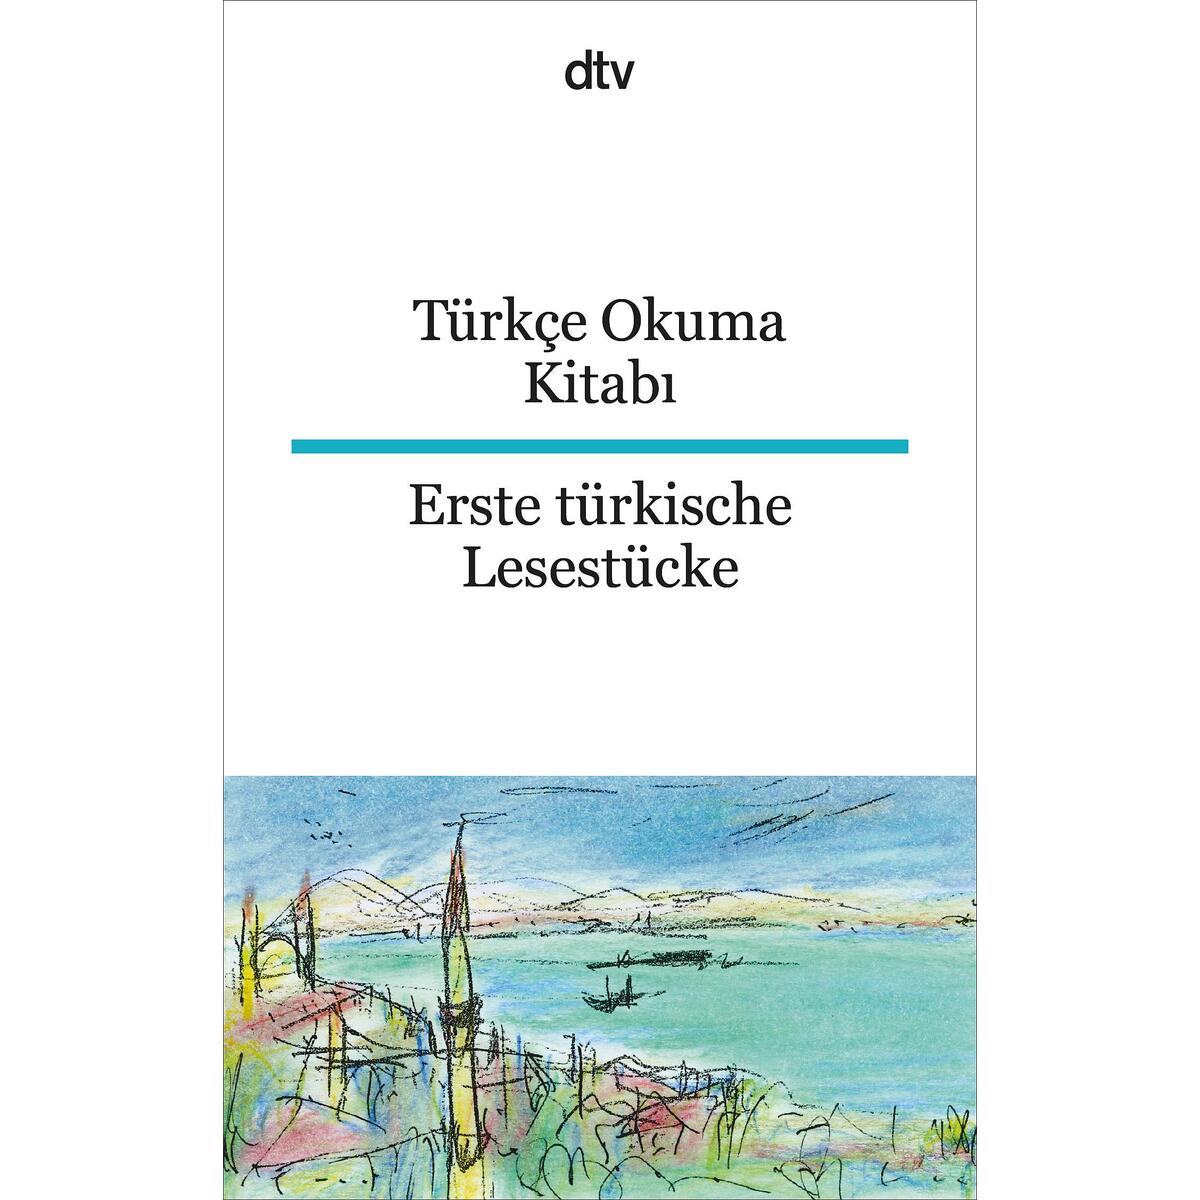 Türkçe Okuma Kitabi Erste türkische Lesestücke von dtv Verlagsgesellschaft